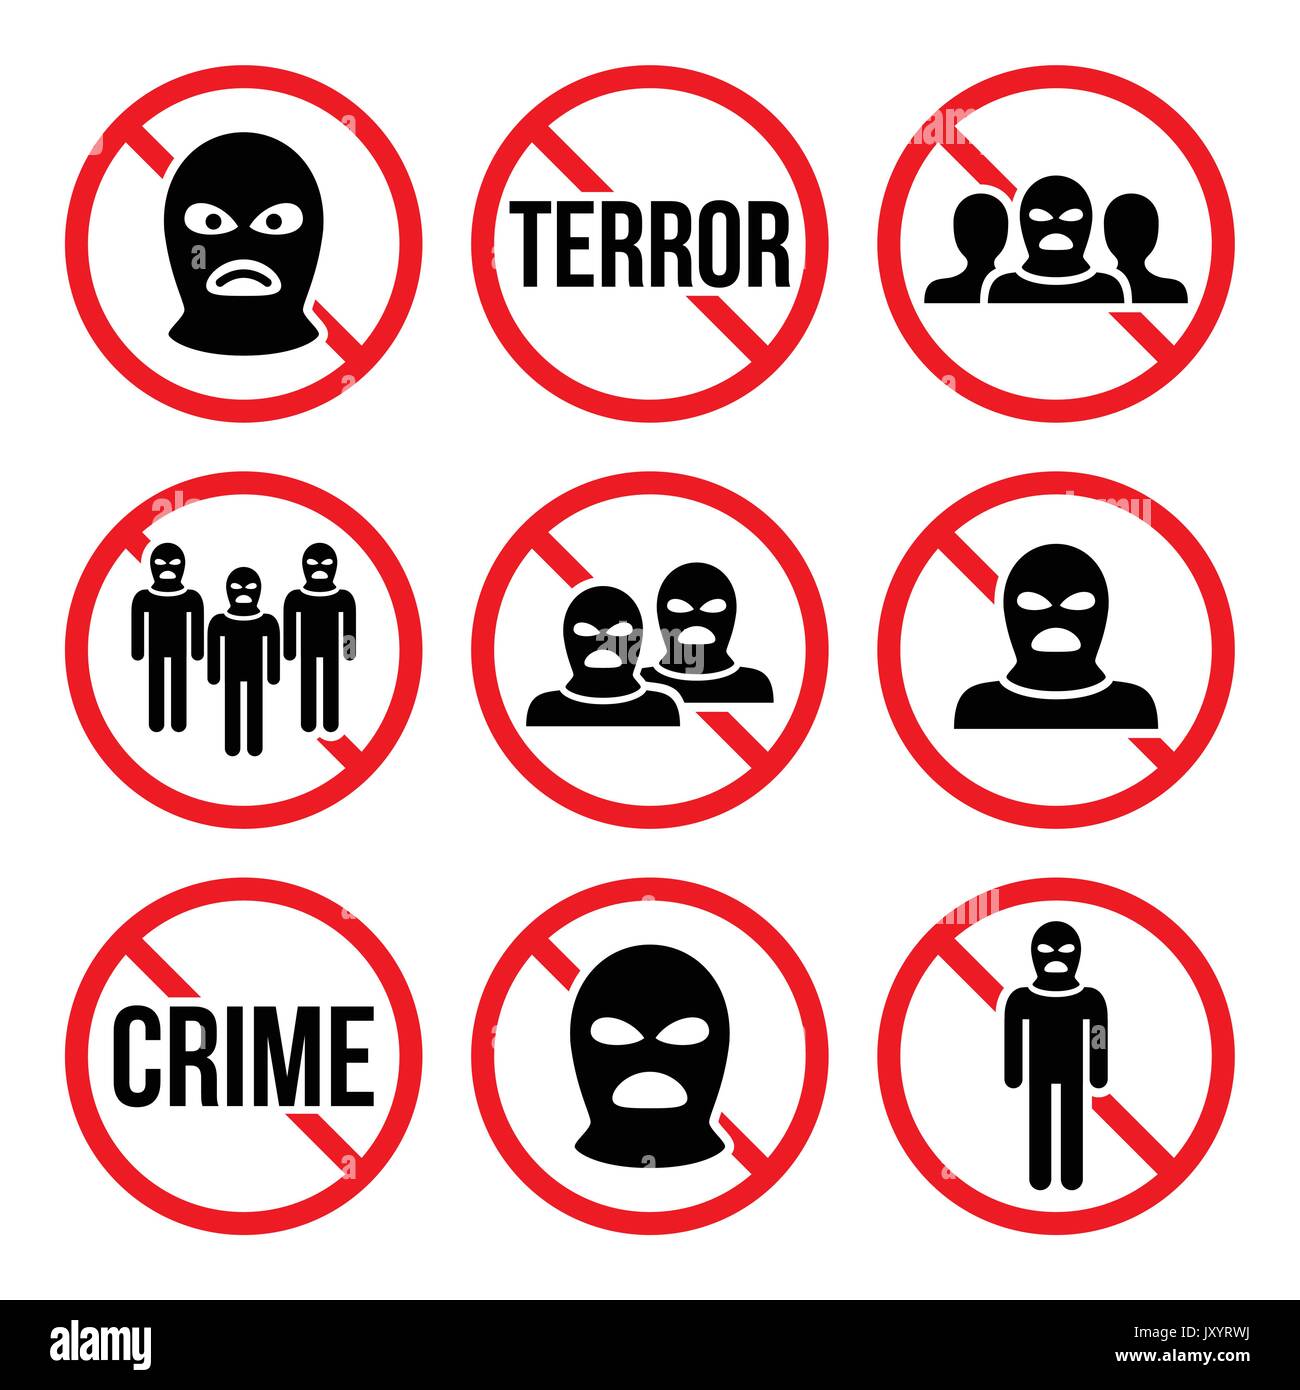 Terrorismus stoppen, kein Verbrechen, keine Warnzeichen der Terrorgruppe, Vektorsymbole werden gesetzt Stock Vektor